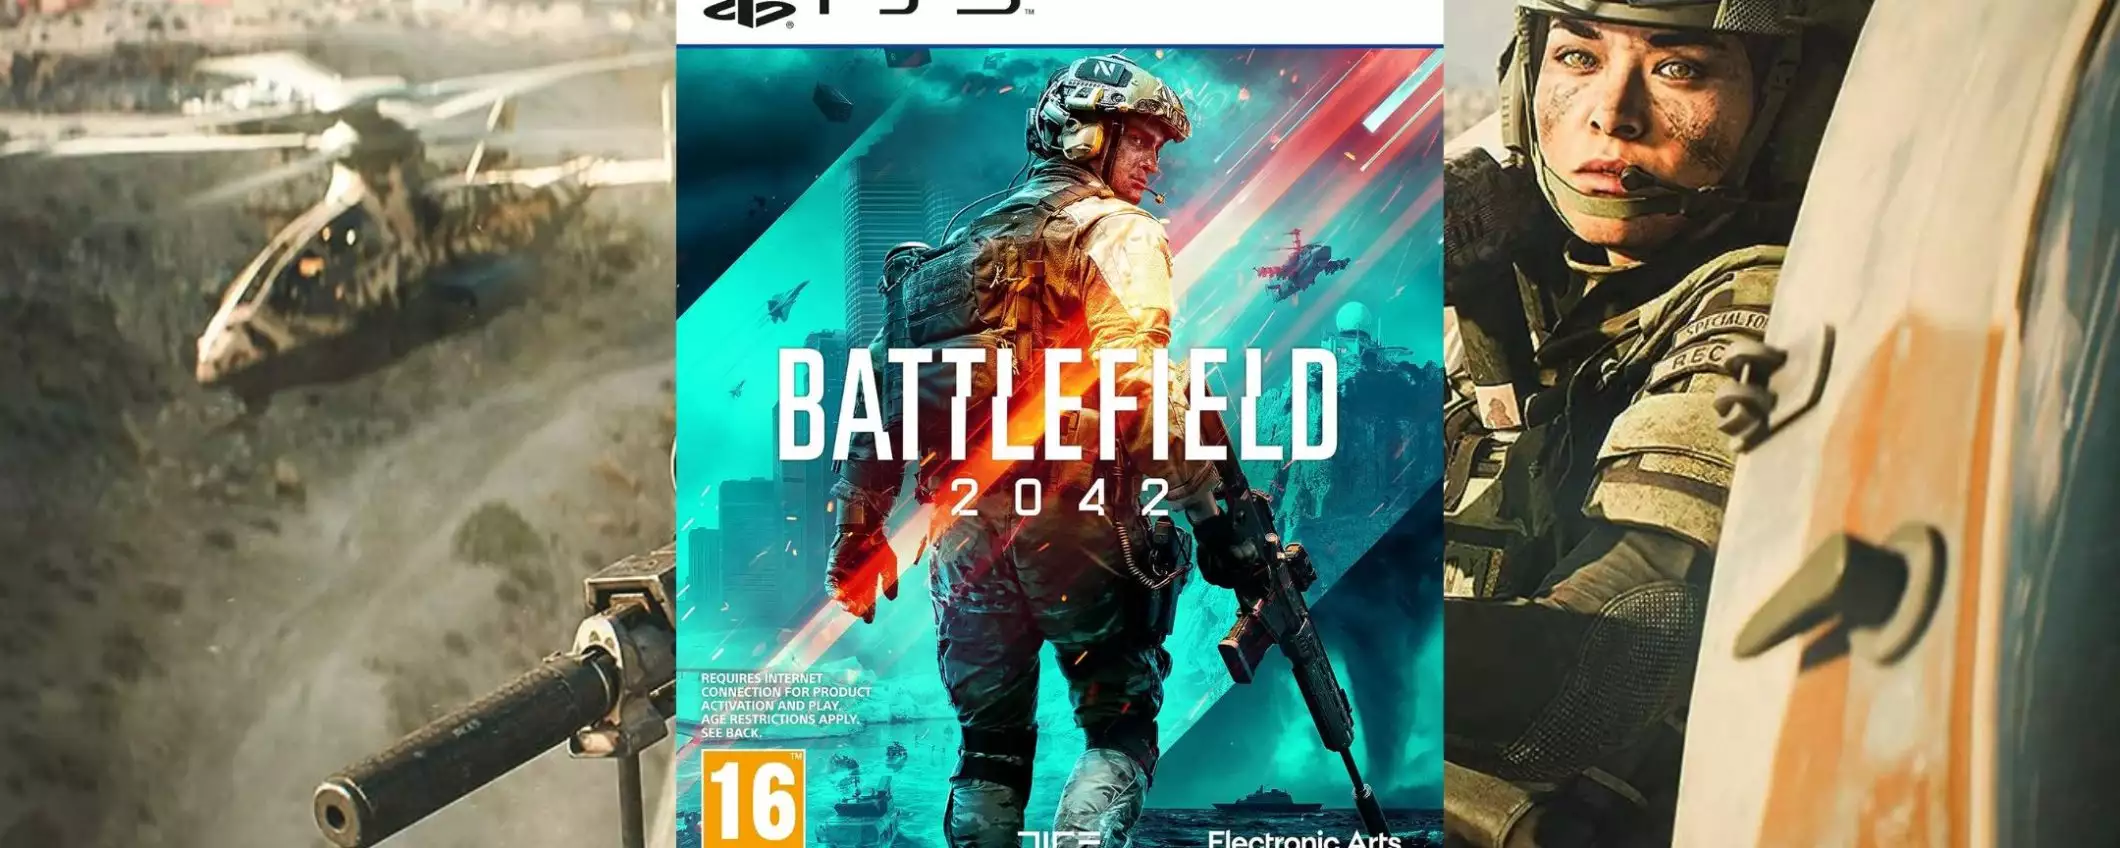 Battlefield 2042 per PS5 a soli 13€ su Amazon: prezzo PAZZESCO!